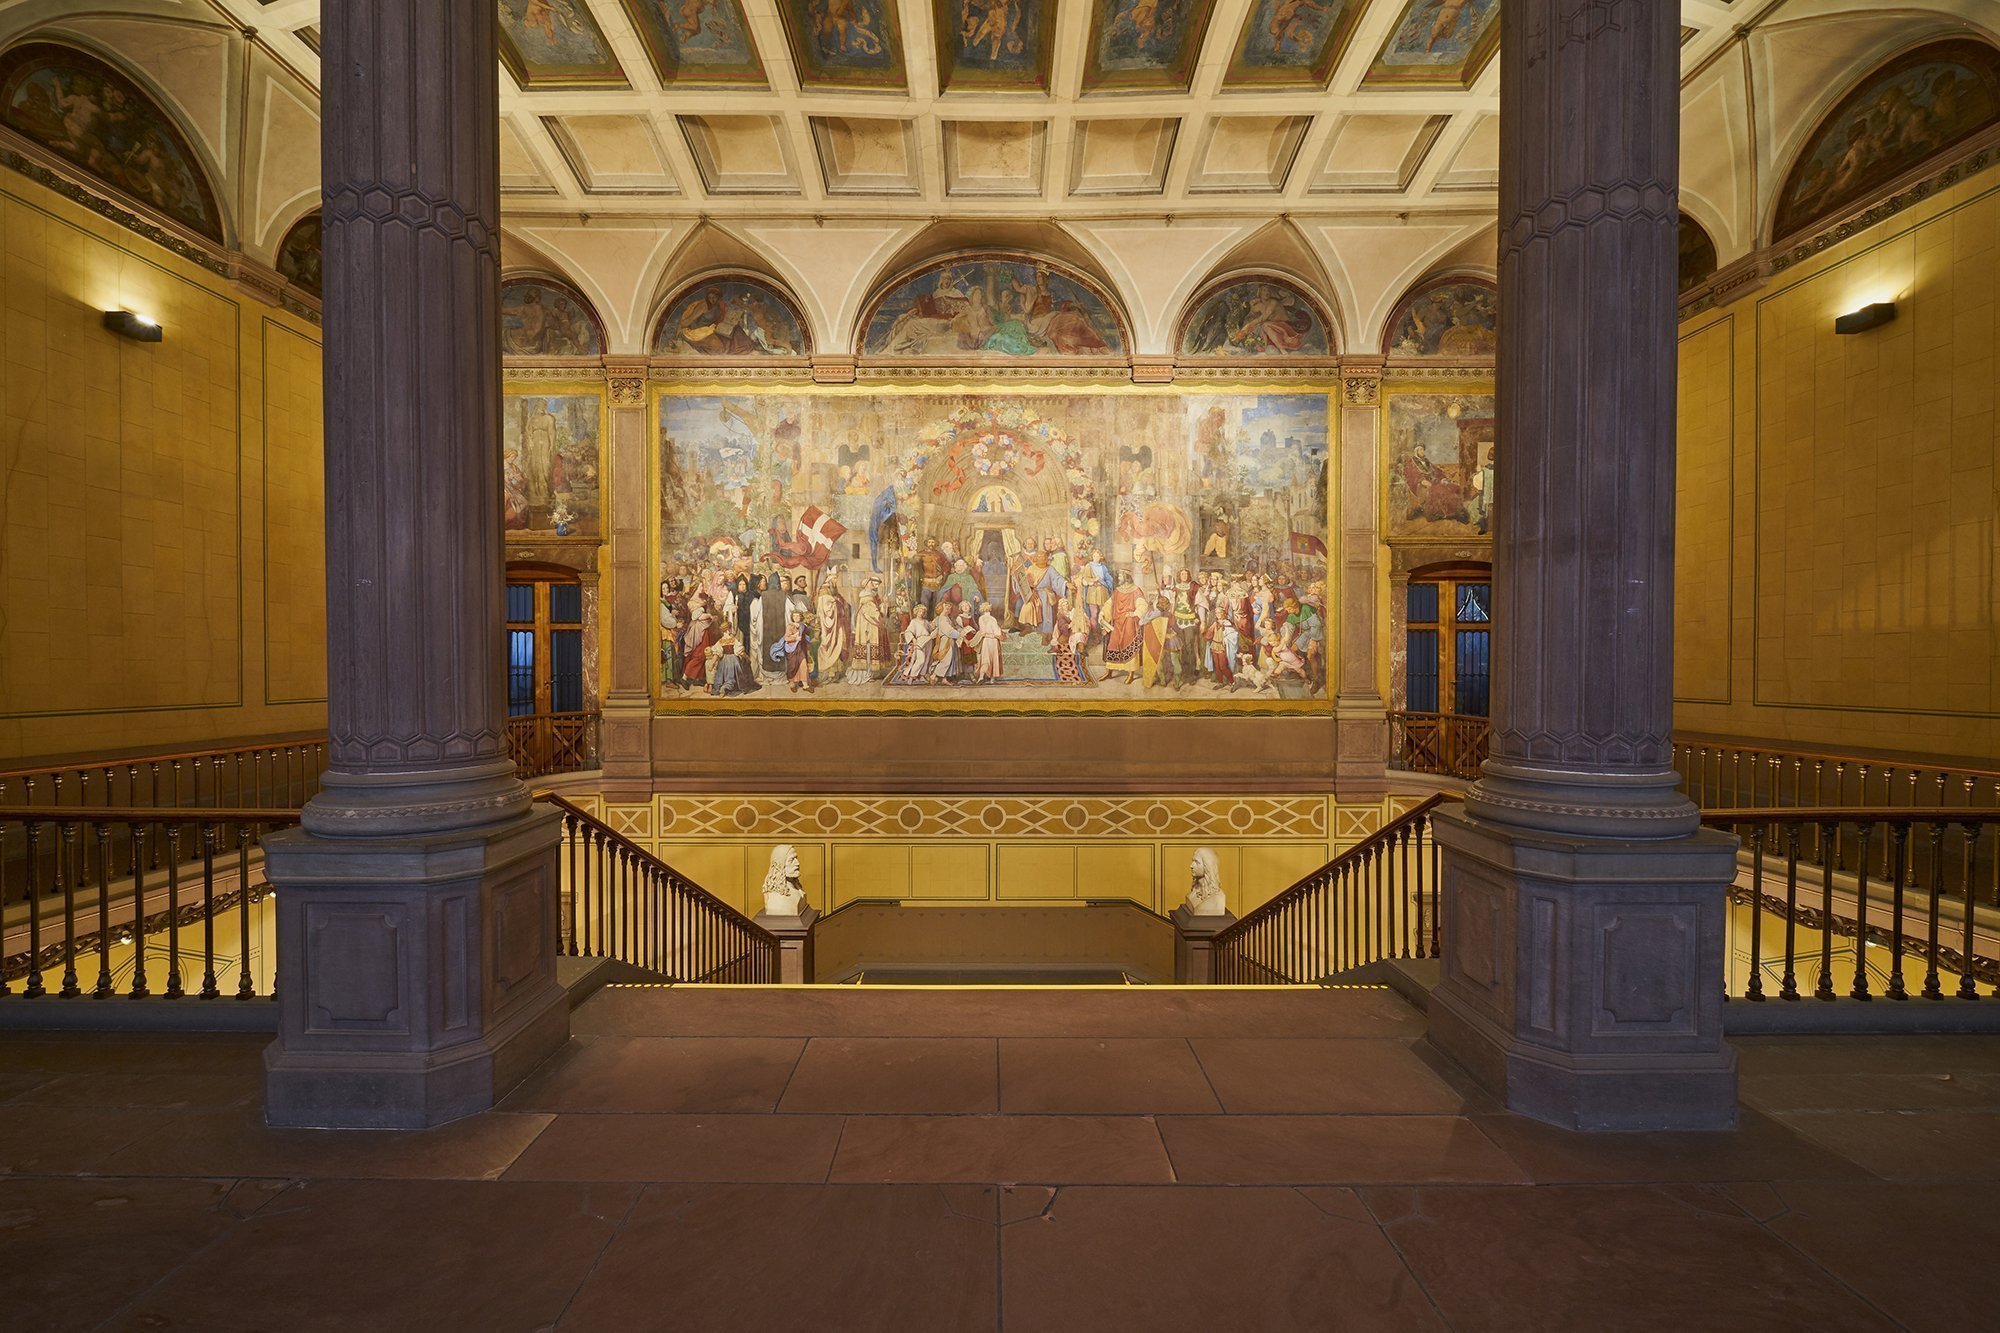 Foto des Treppenaufgangs im Hauptgebäuder der Kunsthalle Karlsruhe mit dem Schwind-Fresko. Das Fresko zeigt eine große Personengruppe, die auf ein Kirchenportal zugeht.